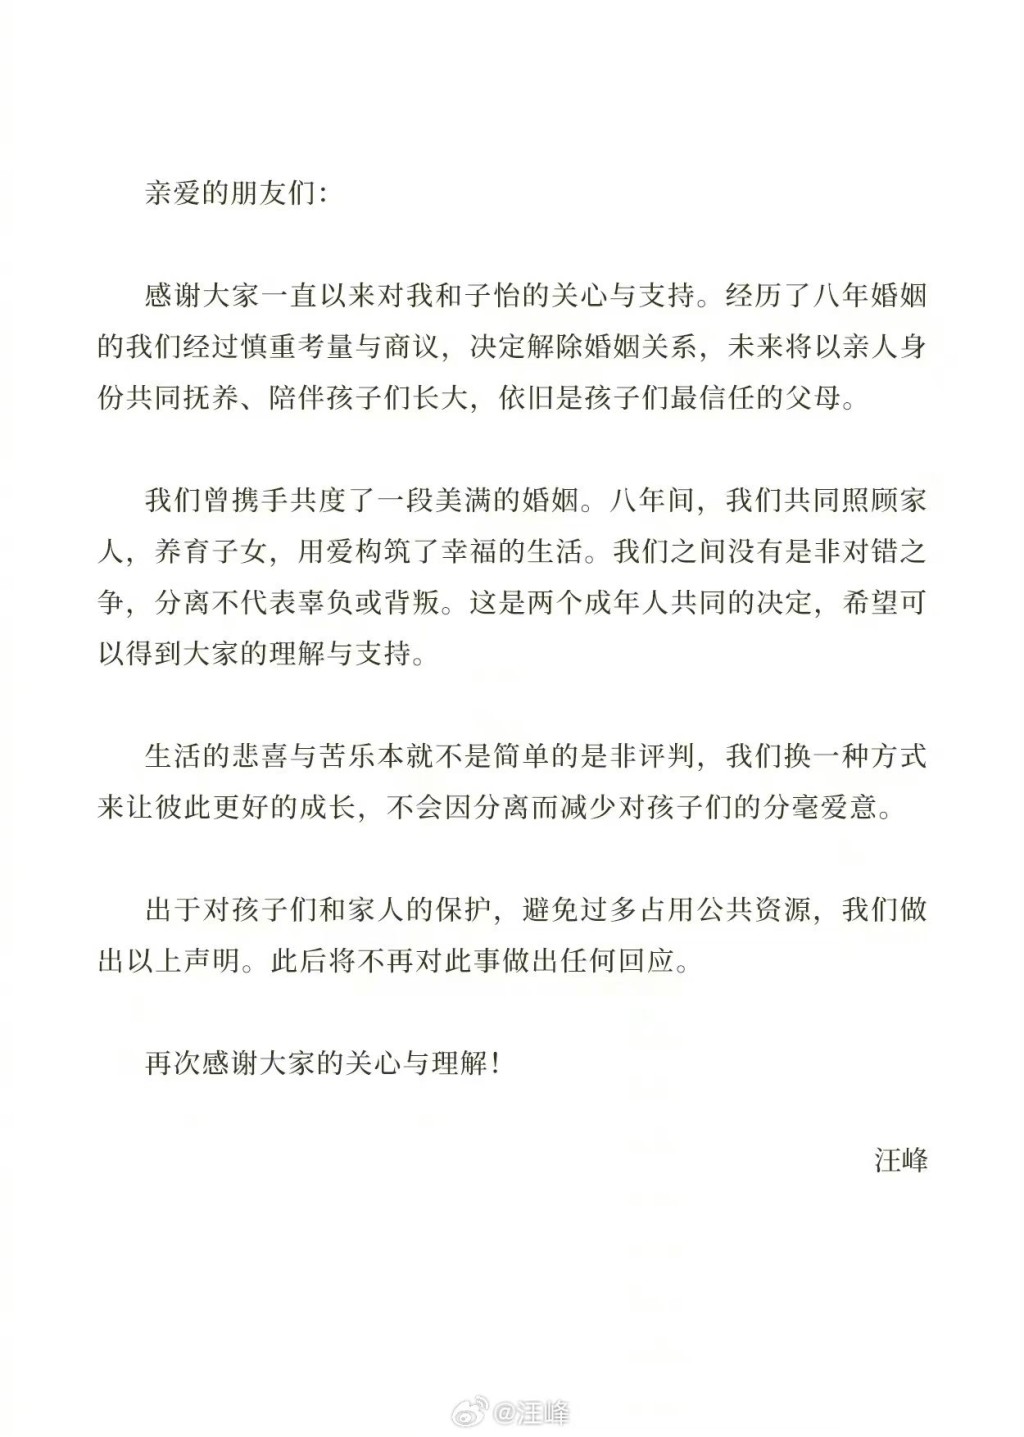 汪峰亦發出同樣的聲明承認離婚。